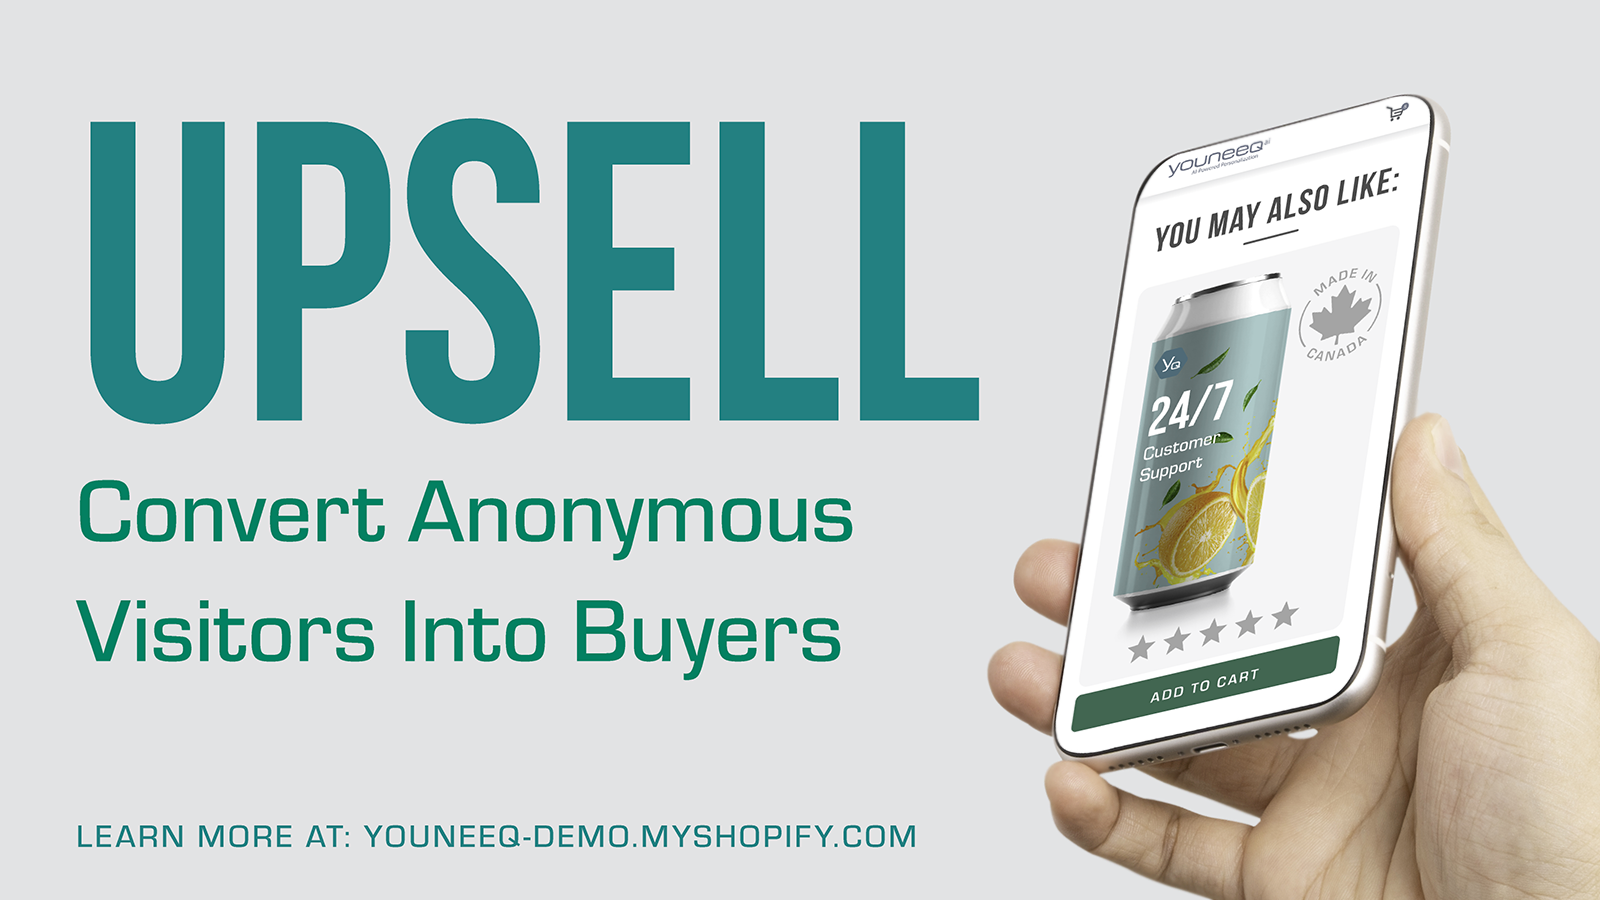 推销 - 将匿名客户转化为买家。